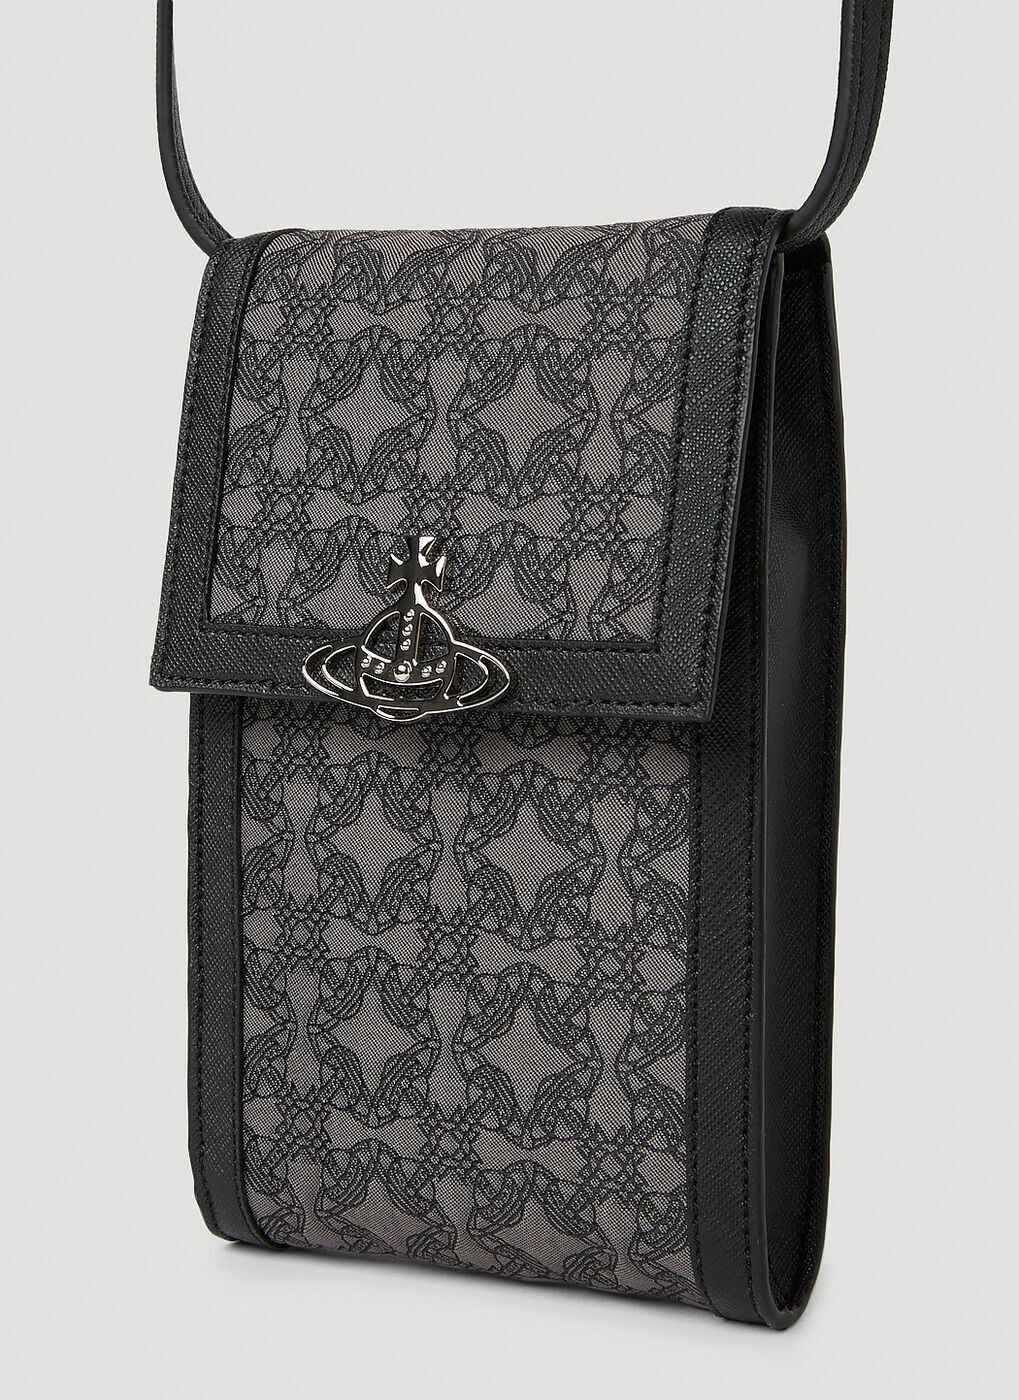 Re-Jacquard Orborama Phone Crossbody Bag in Black Vivienne Westwood